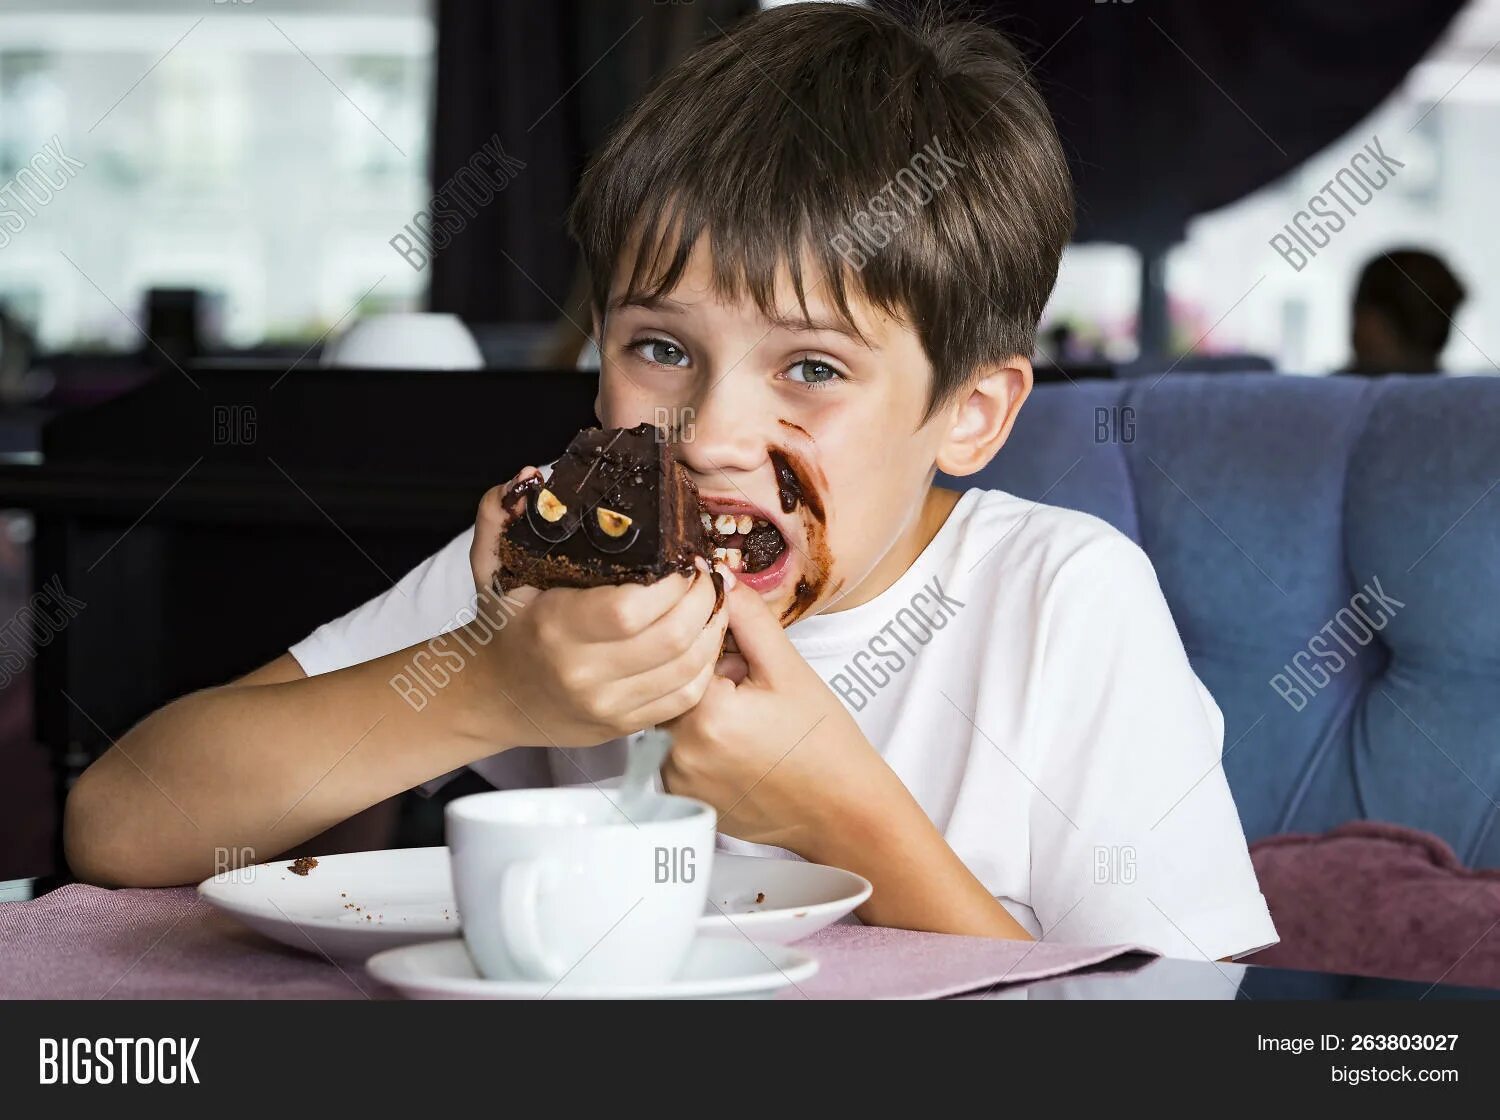 Съел большой кусок. Мальчик ест торт. Мальчик кушает тортик. Человек ест торт. Картинка мальчик с куском торта.